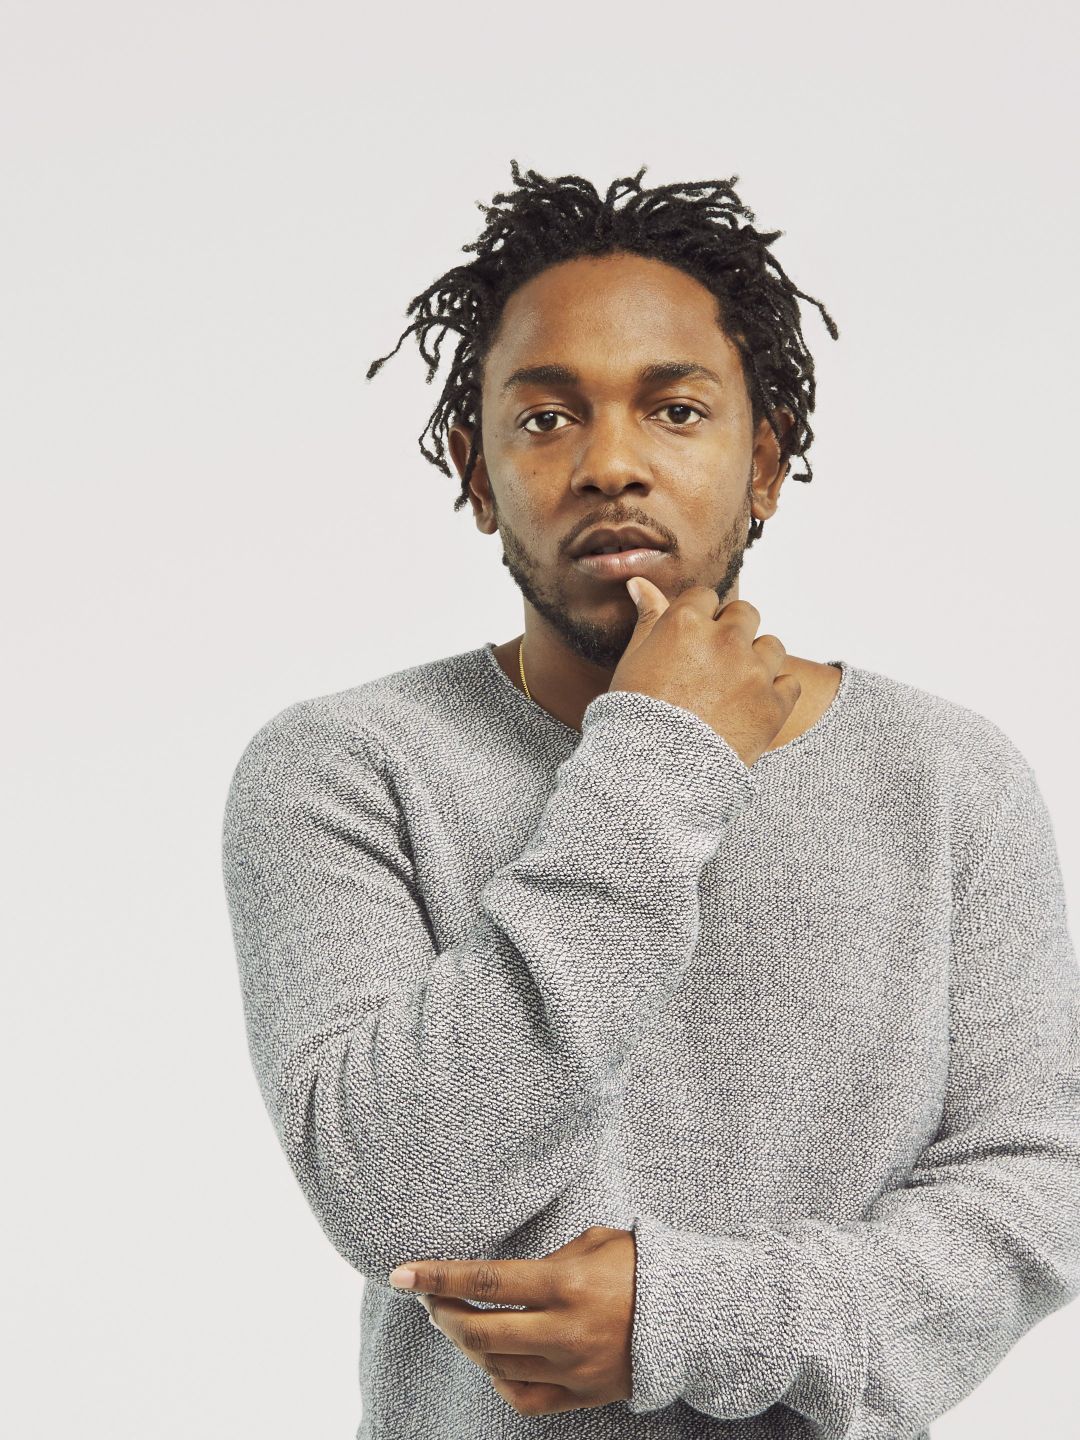 Kendrick Lamar young age